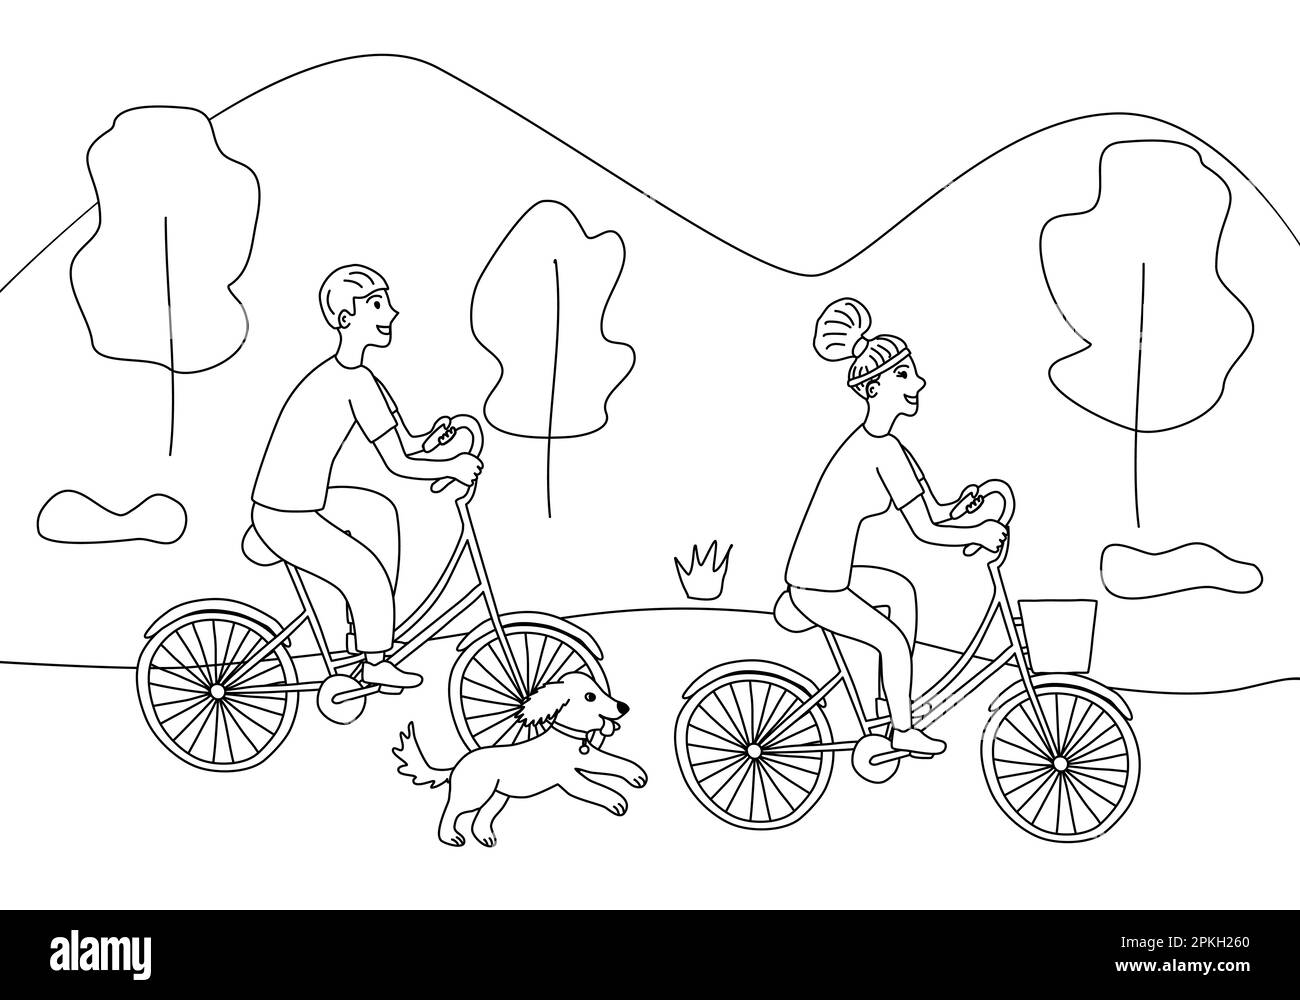 Mann und Frau, die mit dem Fahrrad im Park unterwegs sind, Hund in der Nähe, Familienausflug, Doodle-Style, flache Vektorzeichnung für Kinder Malbuch Stock Vektor